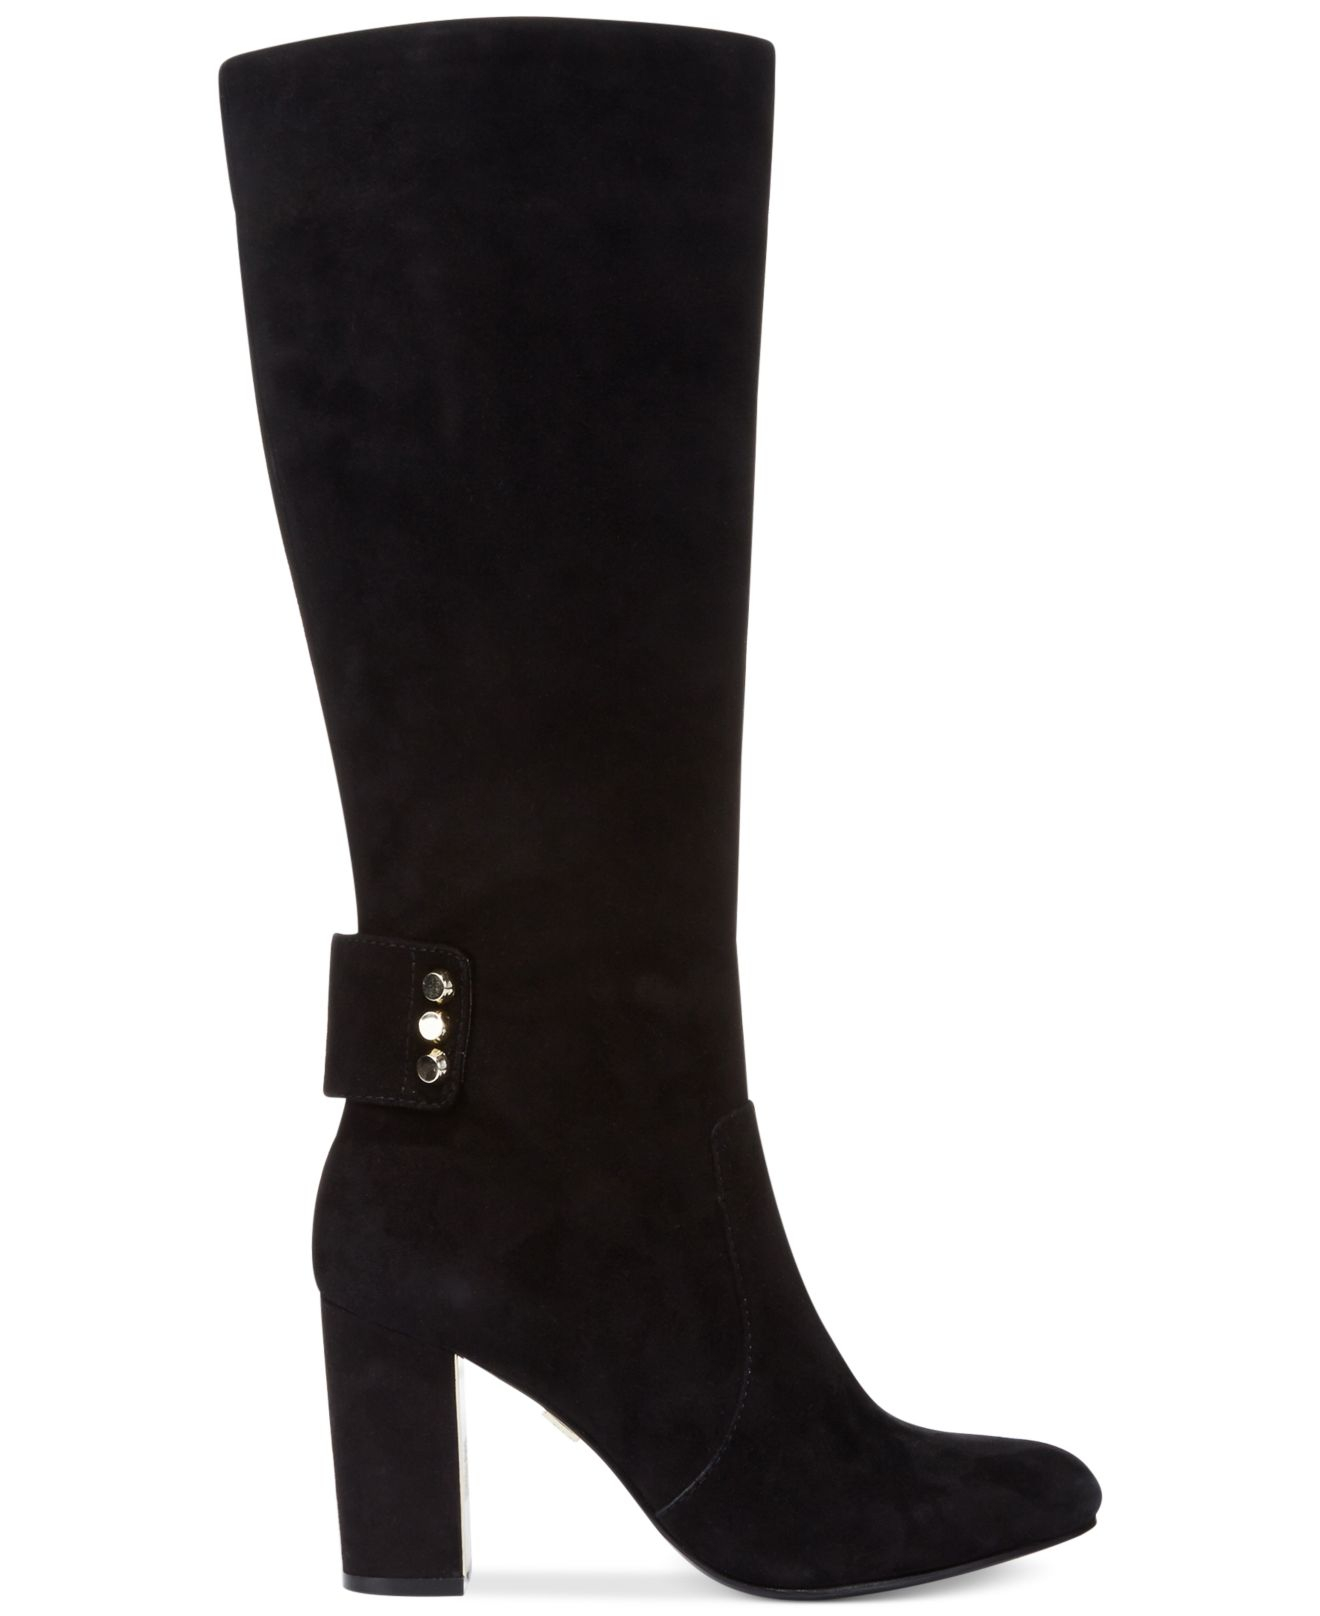 Lyst - Anne Klein Nicholetta Tall Shaft Dress Boots in Black